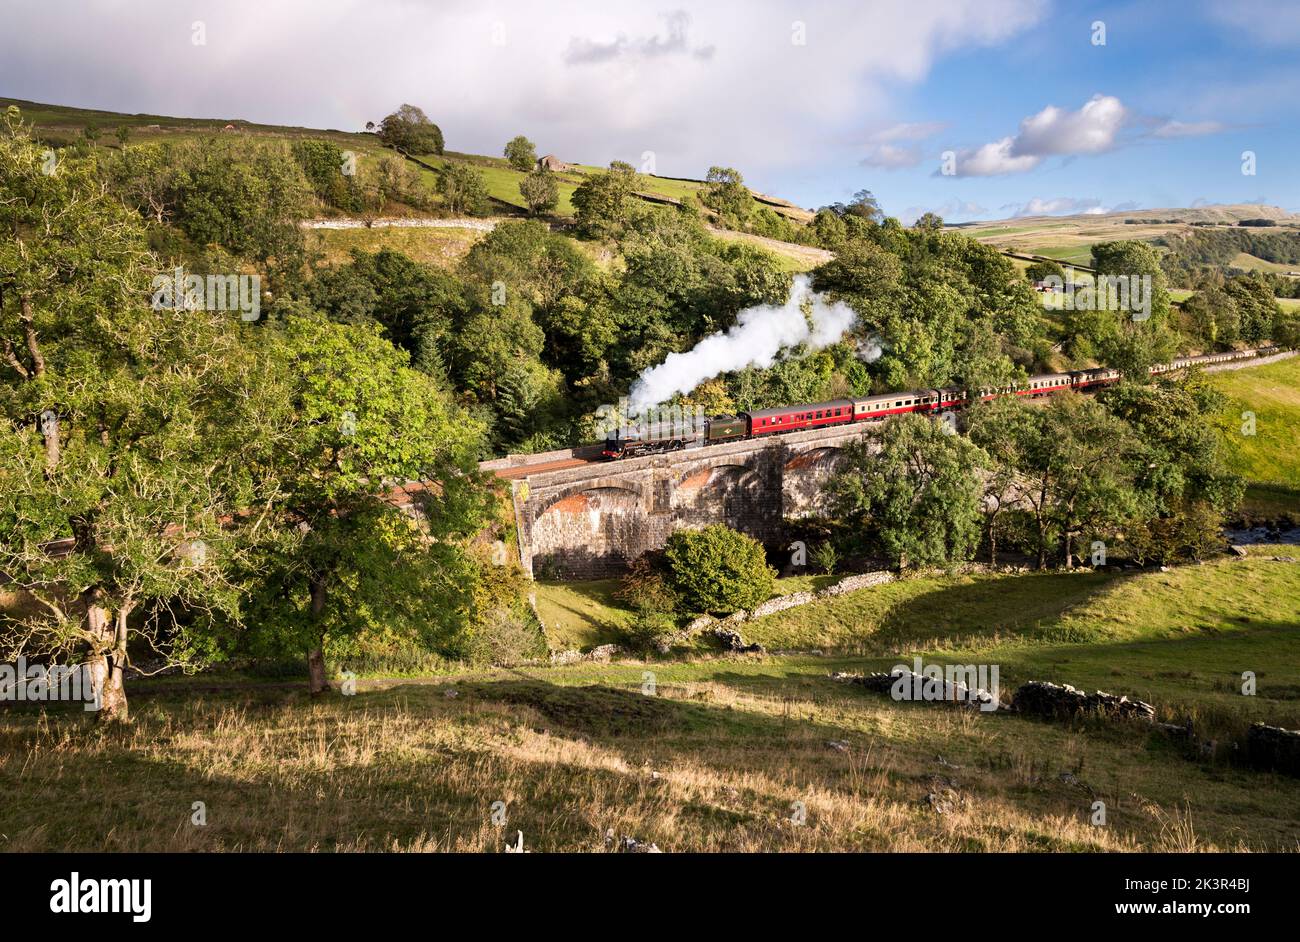 Die Lokomotive „Britannia“ schleppt ein Dampfspecial nach Norden auf die steile Steigung der Settle-Carlisle-Linie, Stainforth, Yorkshire Dales National Park Stockfoto